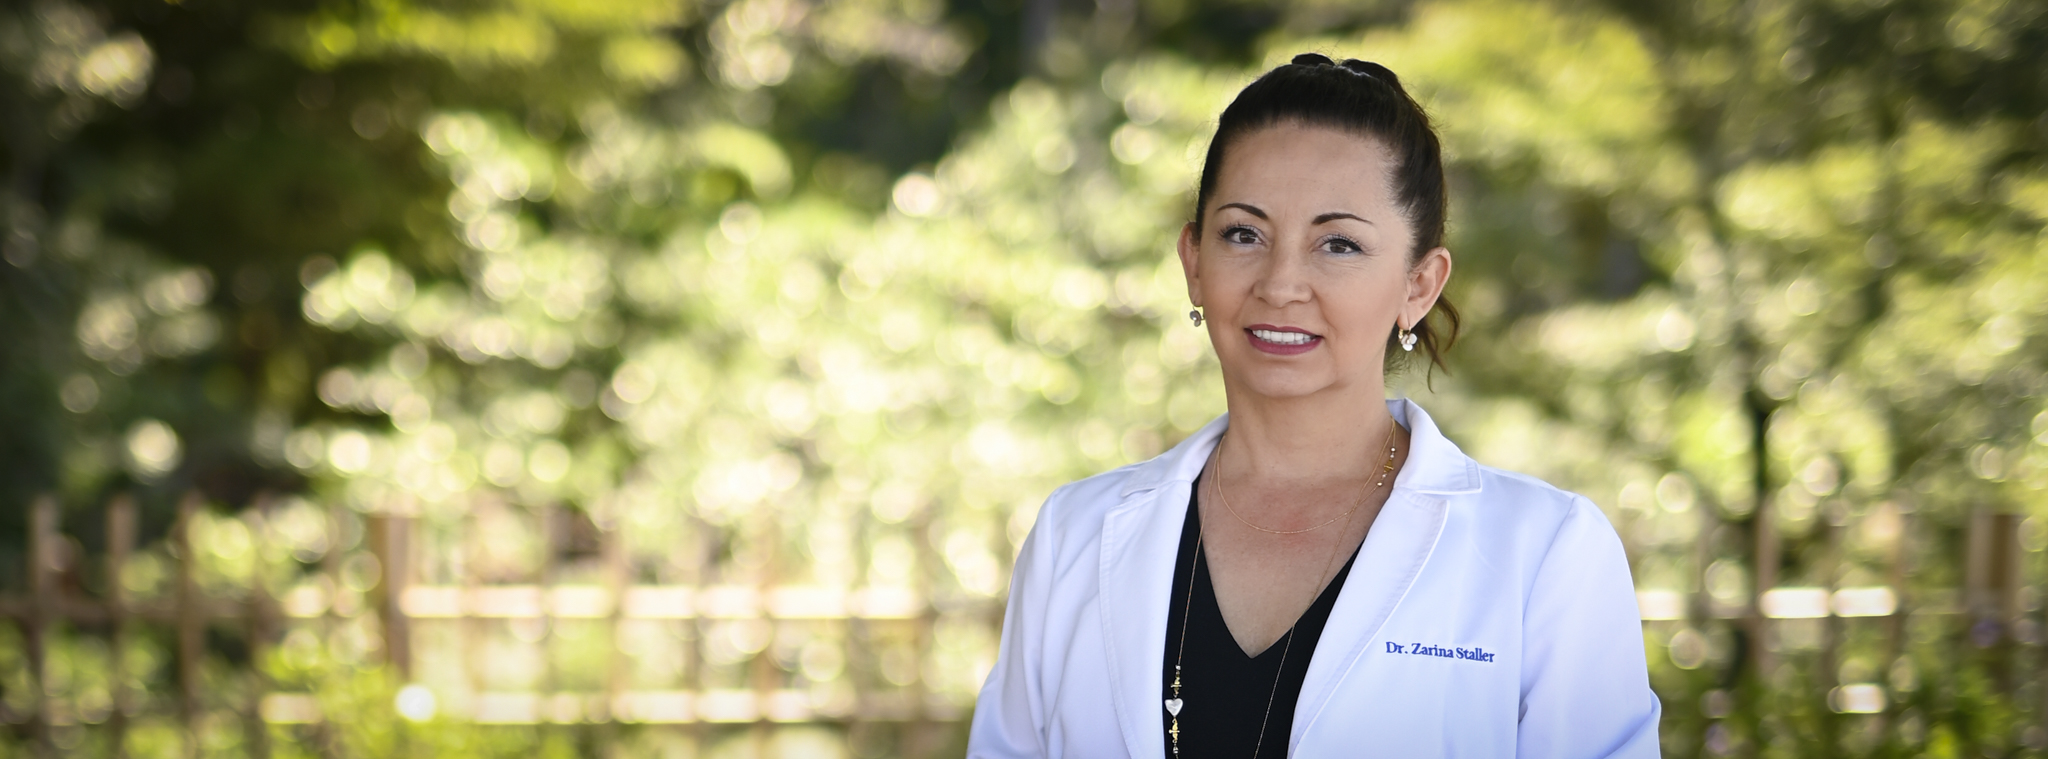 Meet Dr. Zarina Staller Page